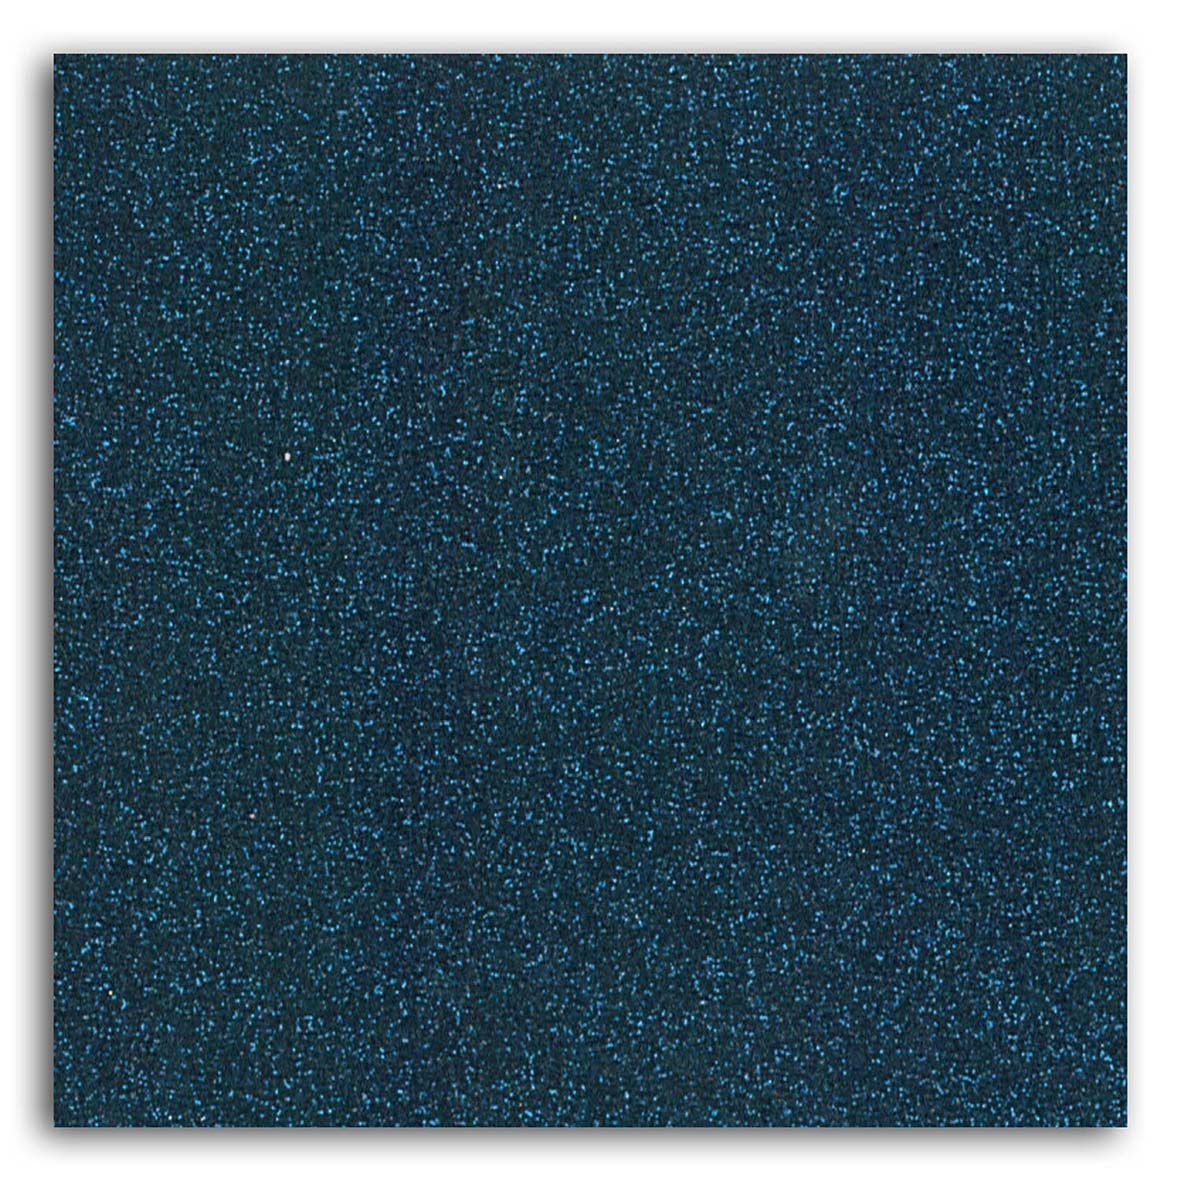 Tissu pailleté thermocollant - Bleu Nuit